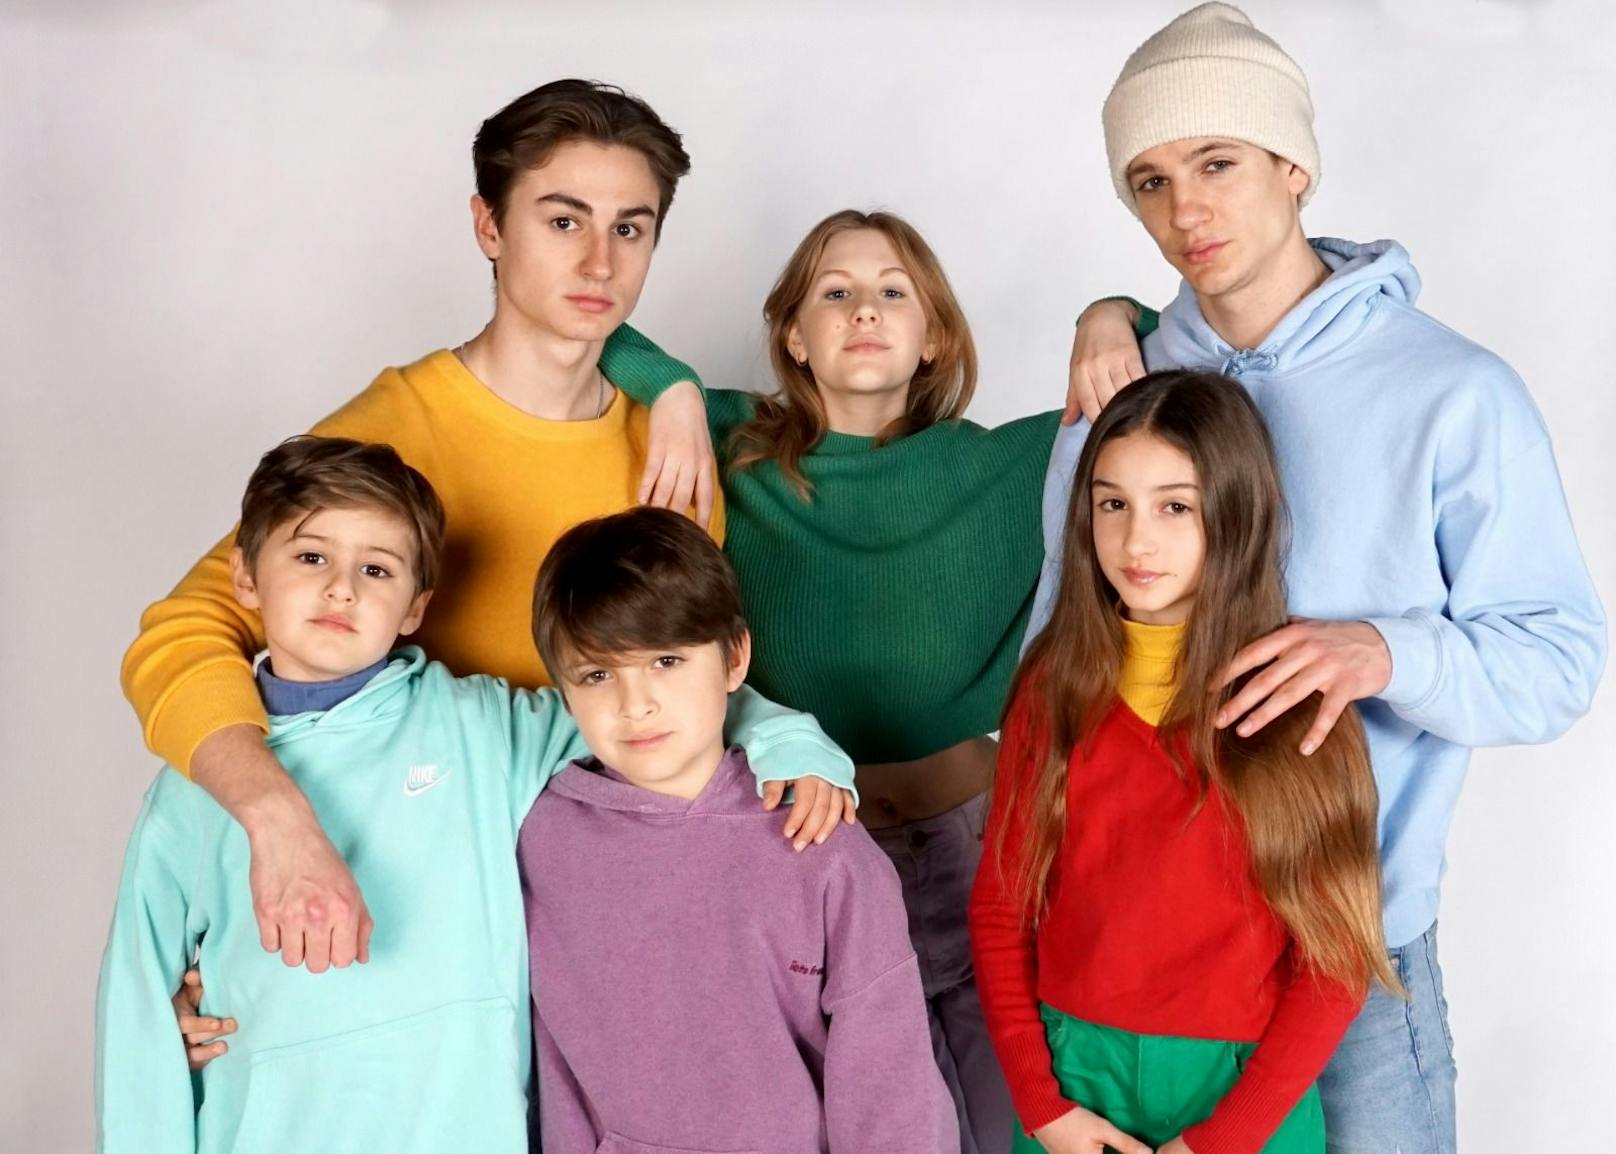 Sechs Kinder singen für Ukraine